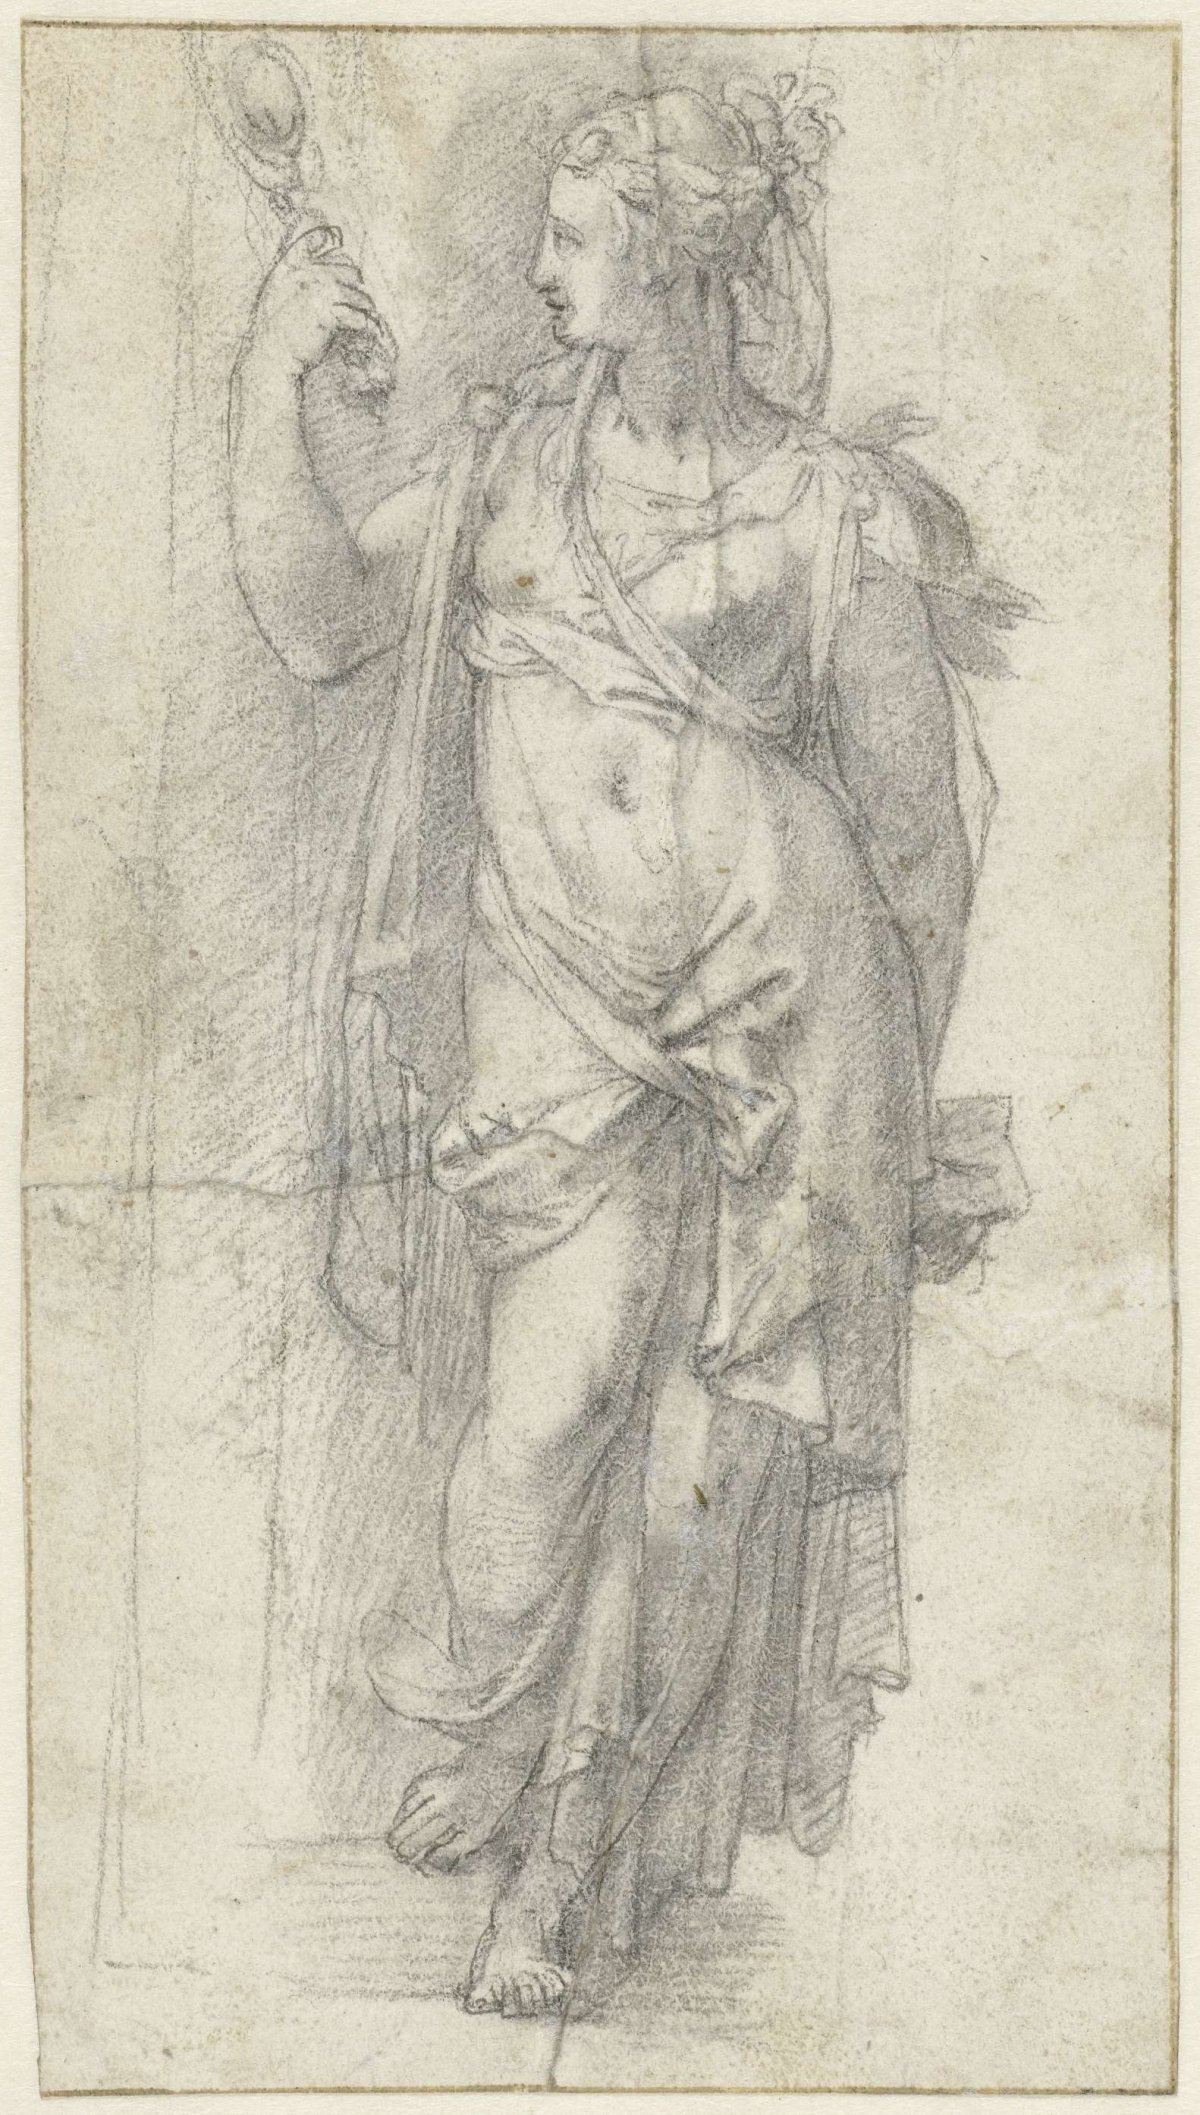 Prudentia, Alessandro Allori, 1570 - 1582